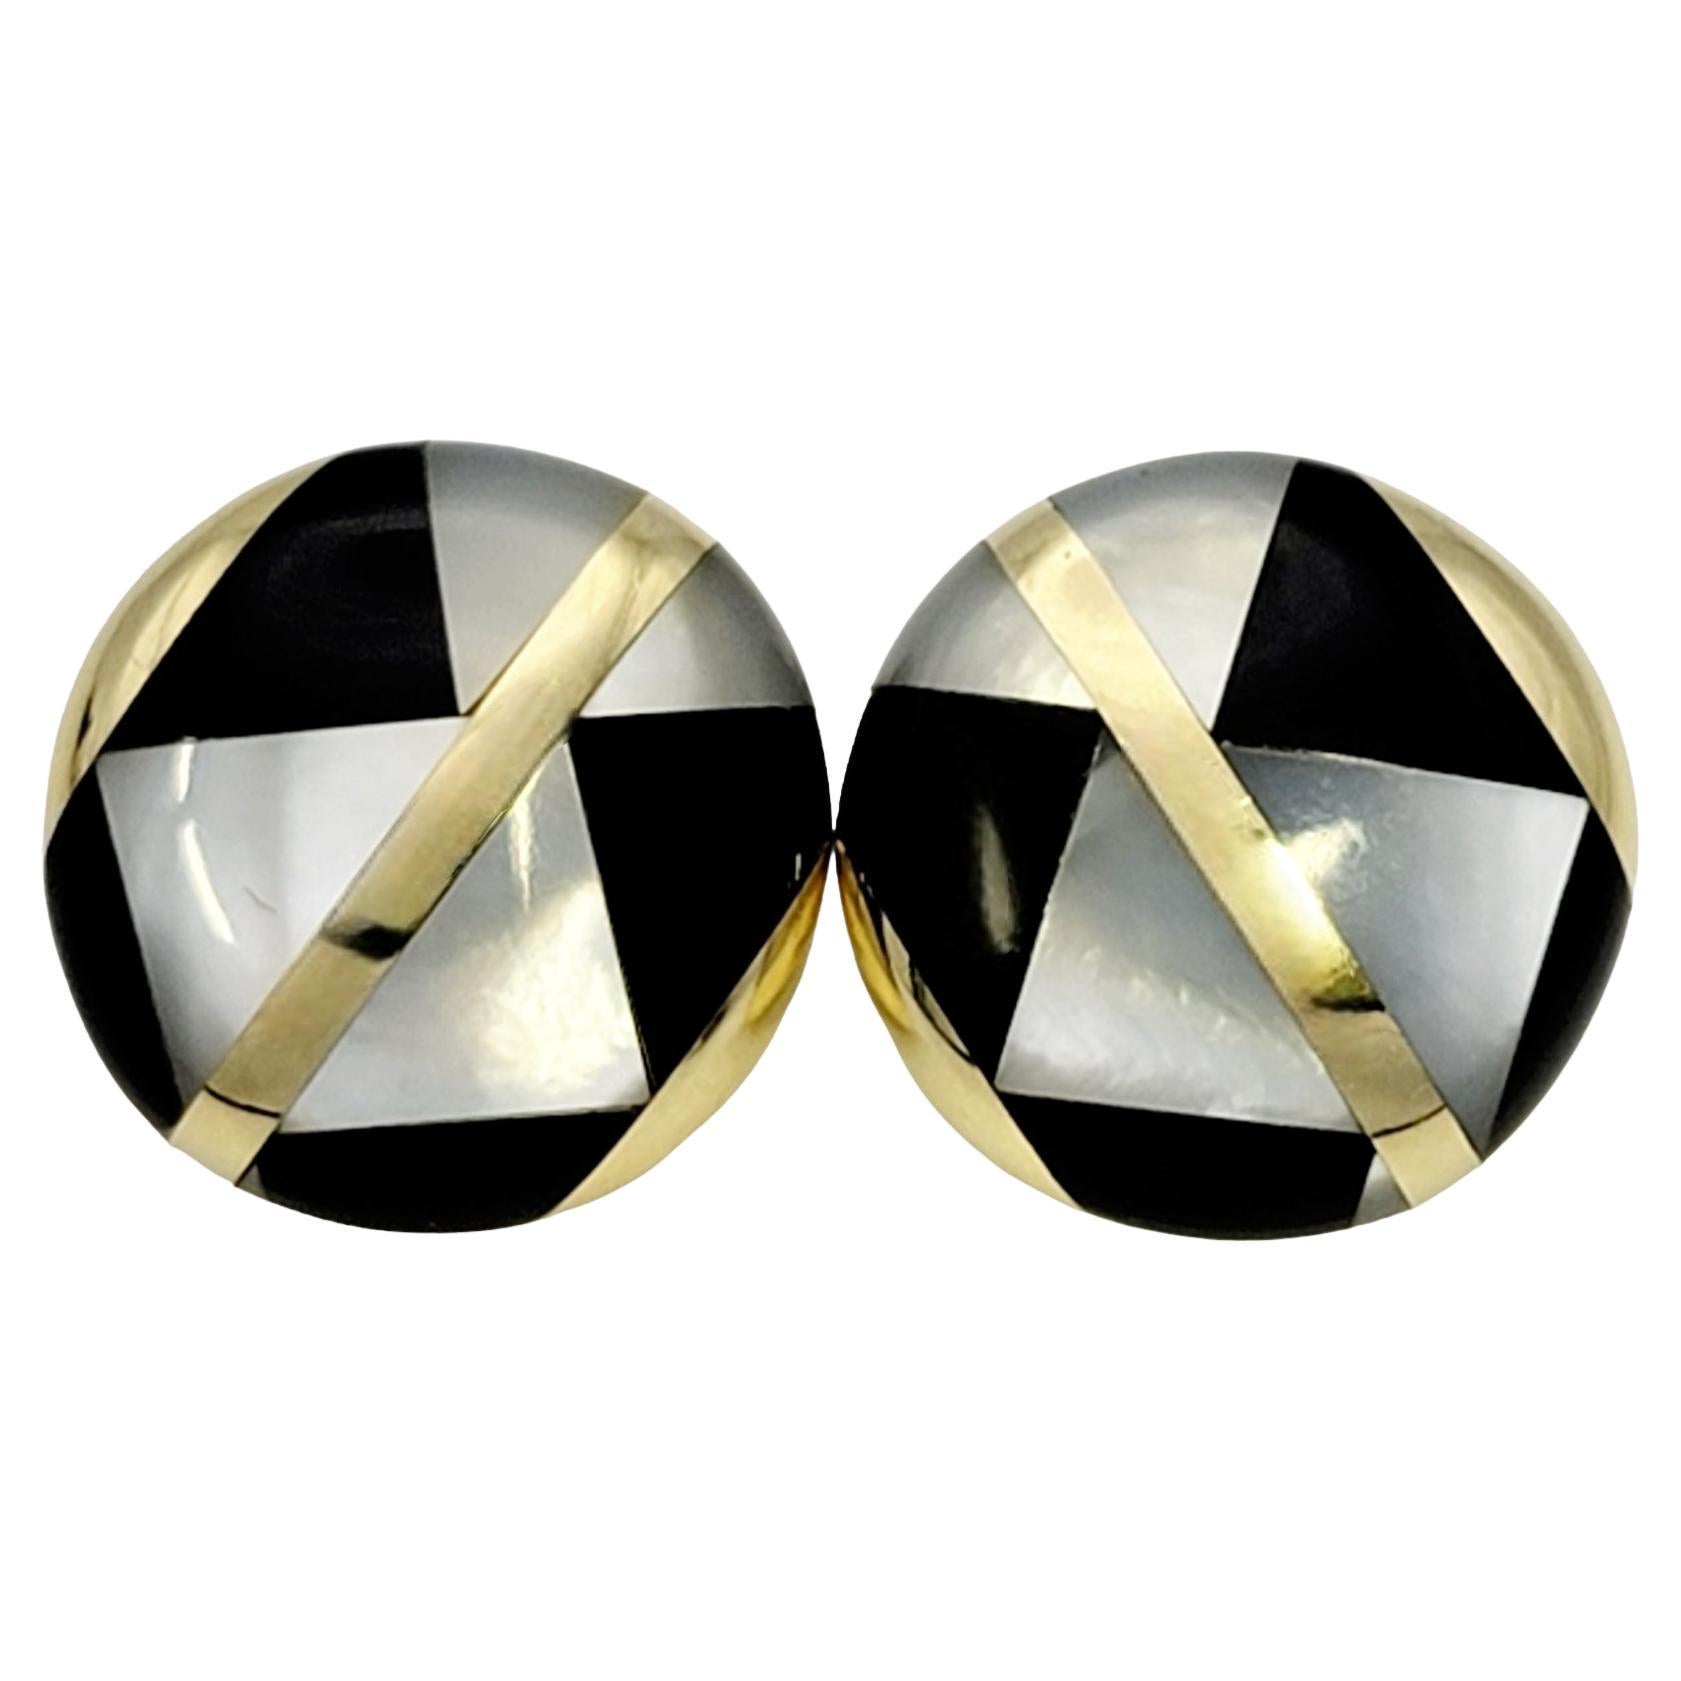 Wunderschöne Vintage-Ohrringe von Tiffany & Co. Diese stilvollen Designer-Ohrringe sind aus luxuriösem 18-karätigem Gelbgold gefertigt und weisen ein geometrisches Muster aus Perlmutt und schwarzem Onyx auf. Die perfekte Knopfform schmiegt sich eng